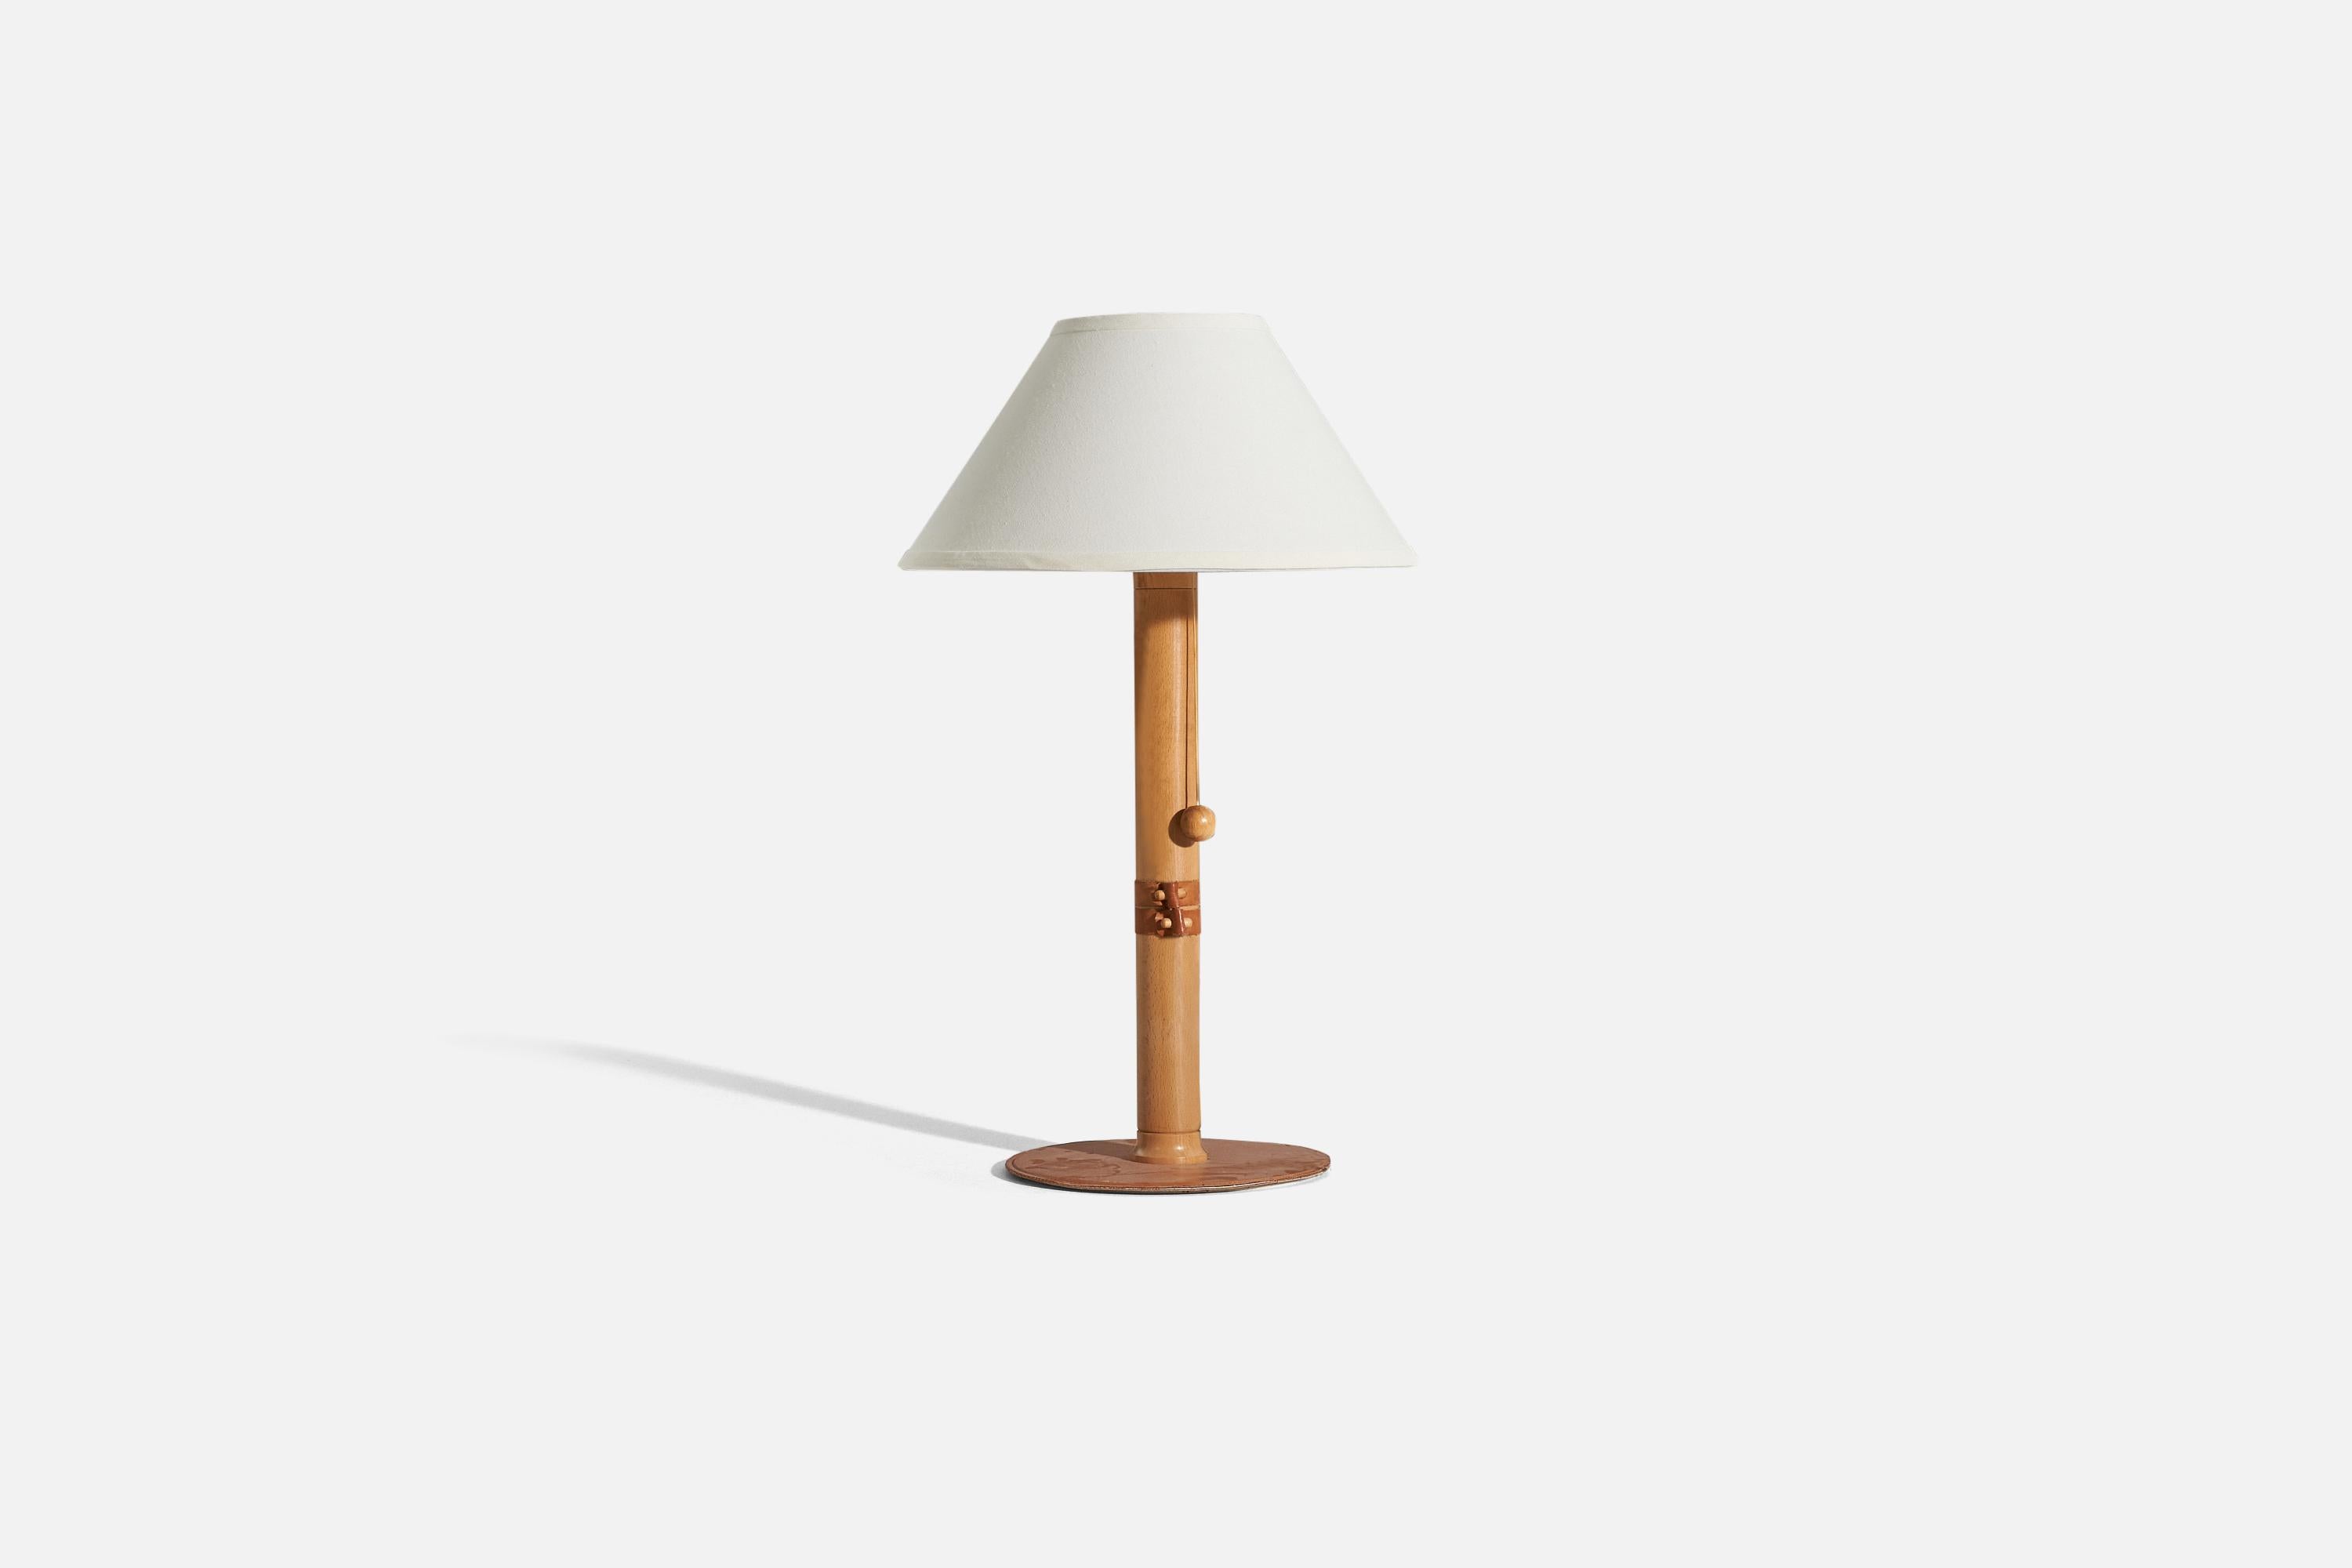 Lampe de table en bois et cuir conçue et produite par un designer suédois, Suède, années 1970.

Vendu sans abat-jour. 
Dimensions de la lampe (pouces) : 19.5625 x 9,125 x 9,125 (H x L x P)
Dimensions de l'abat-jour (pouces) : 5.75 x 14 x 8 (T x